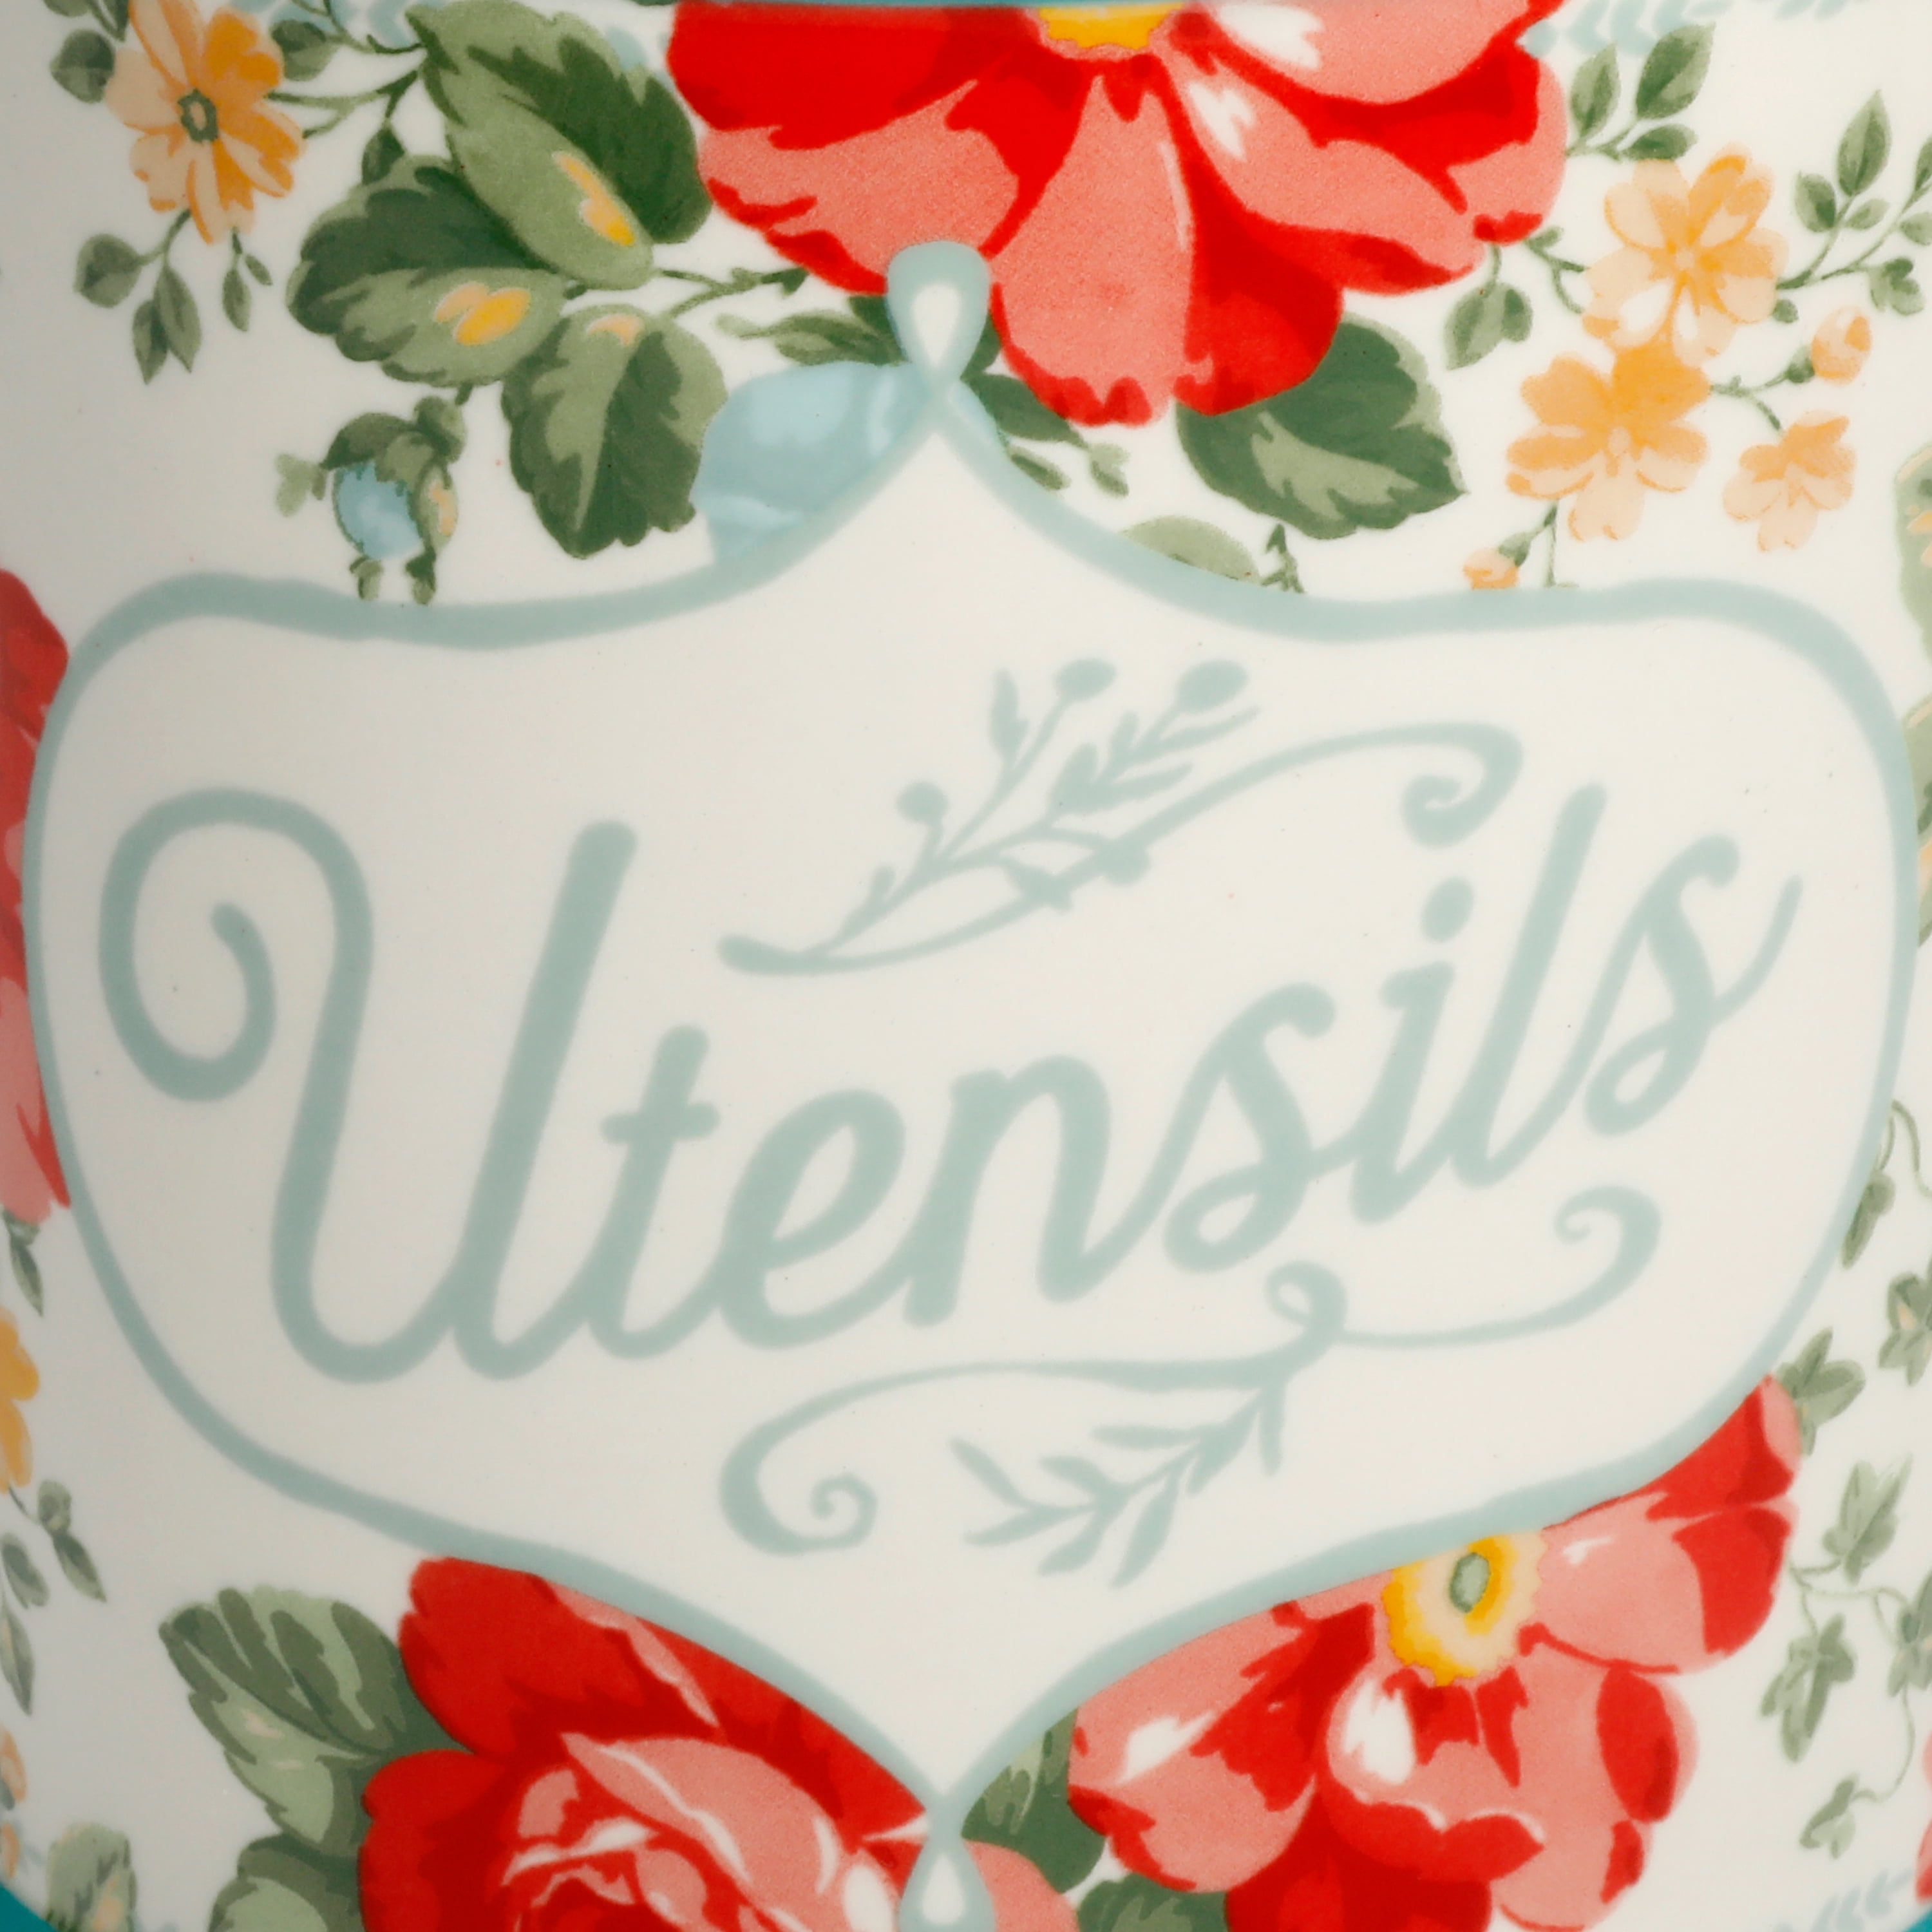 The Pioneer Woman Vintage Floral Utensil Crock & Tool Set - Zars Buy